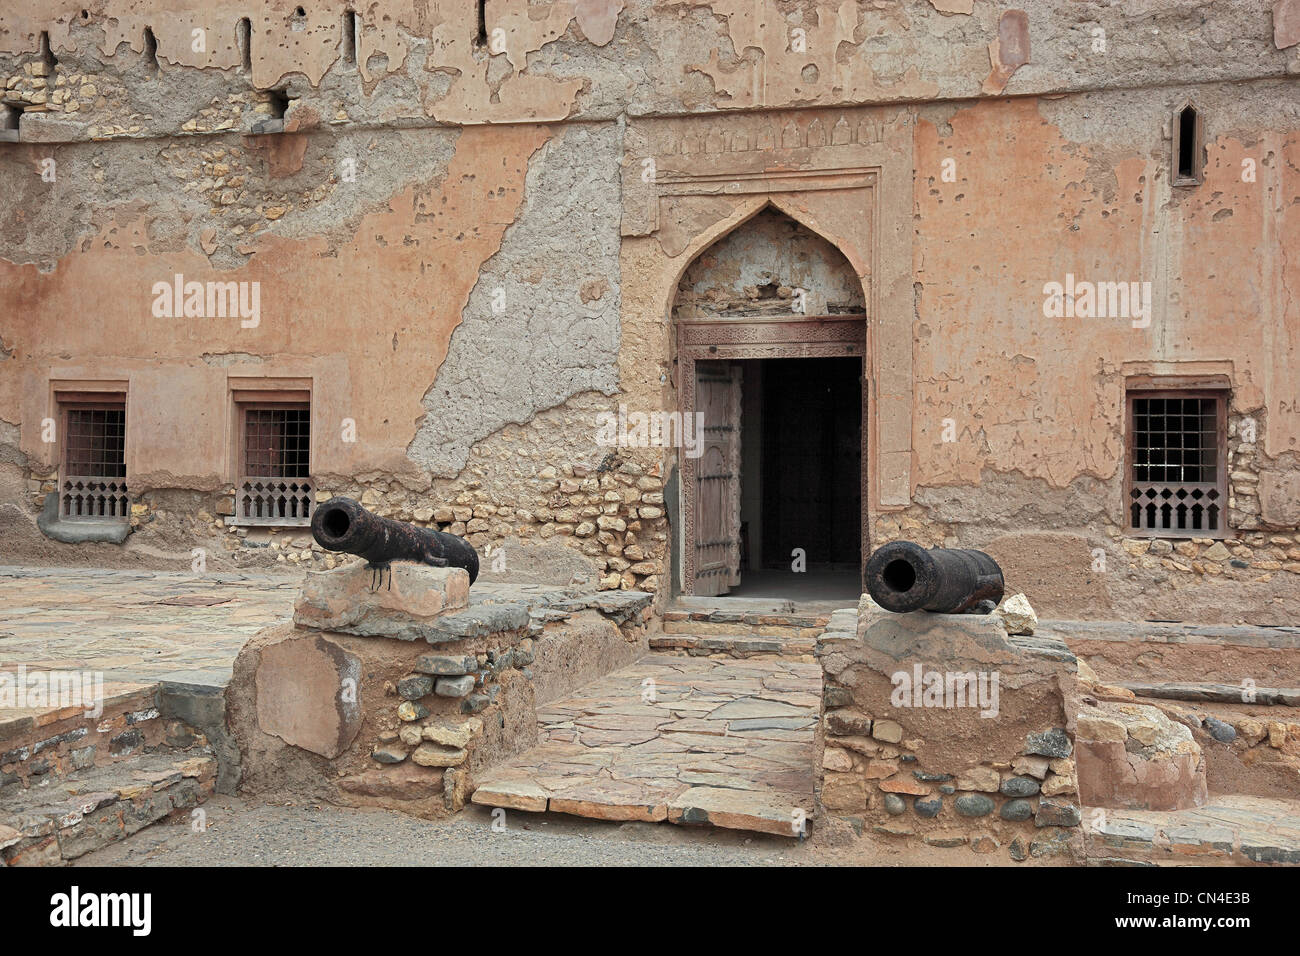 Fort von Qurayyat, Oman Stock Photo